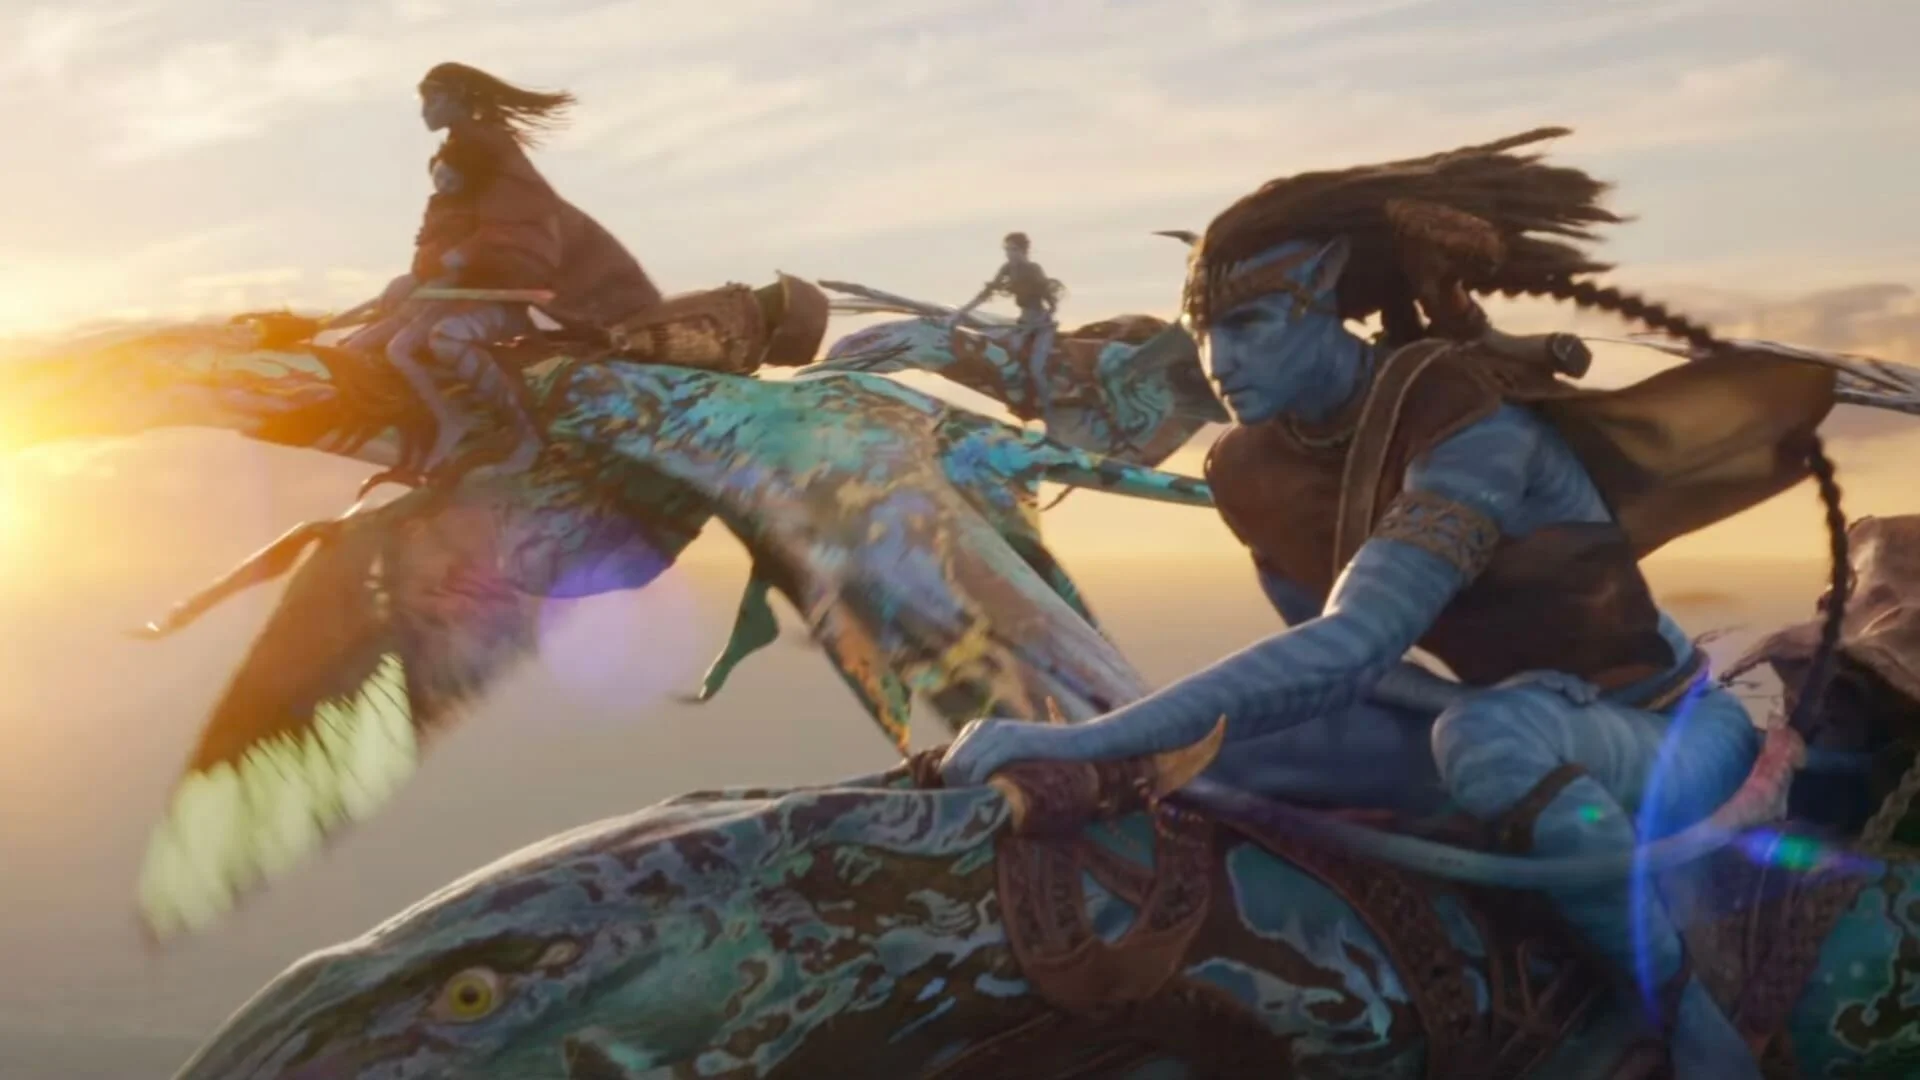 Aggódsz az Avatar: A víz útja hosszúsága miatt, James Cameron tanáccsal látta el azokat, akik hiányolják a mosdószünetet a vetítés alatt